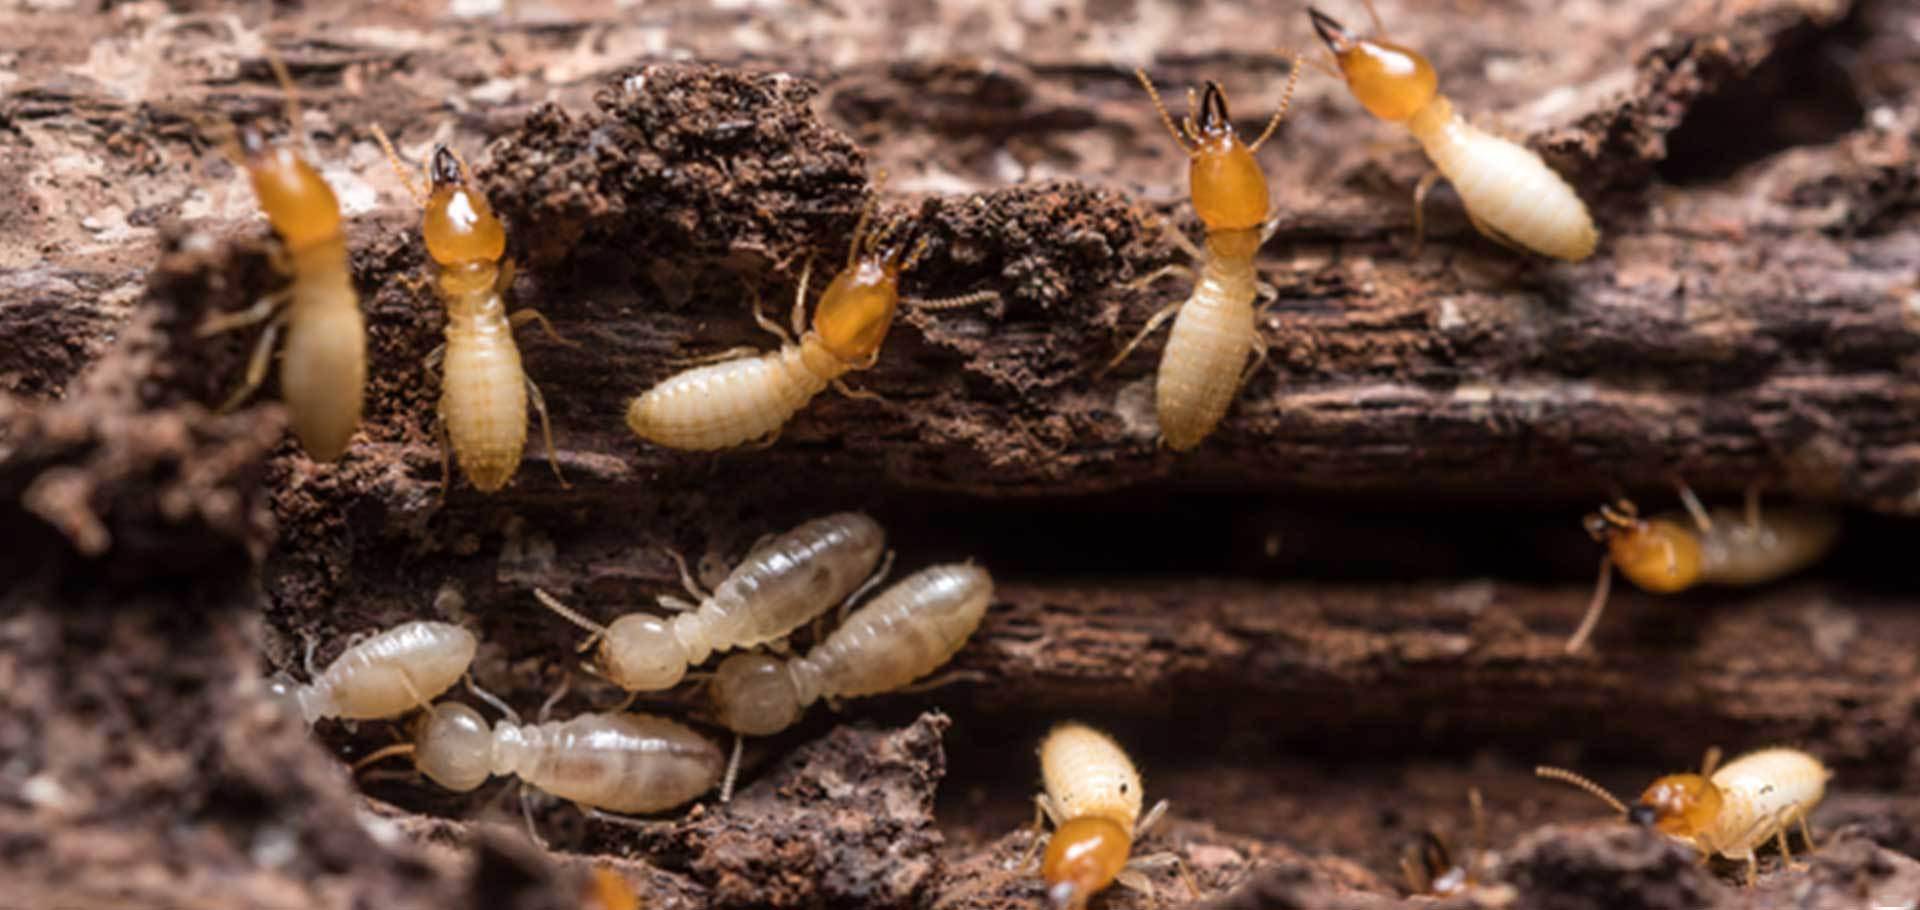 “六边形入侵者”红火蚁有多大的伤害力，见到它为什么要远离？